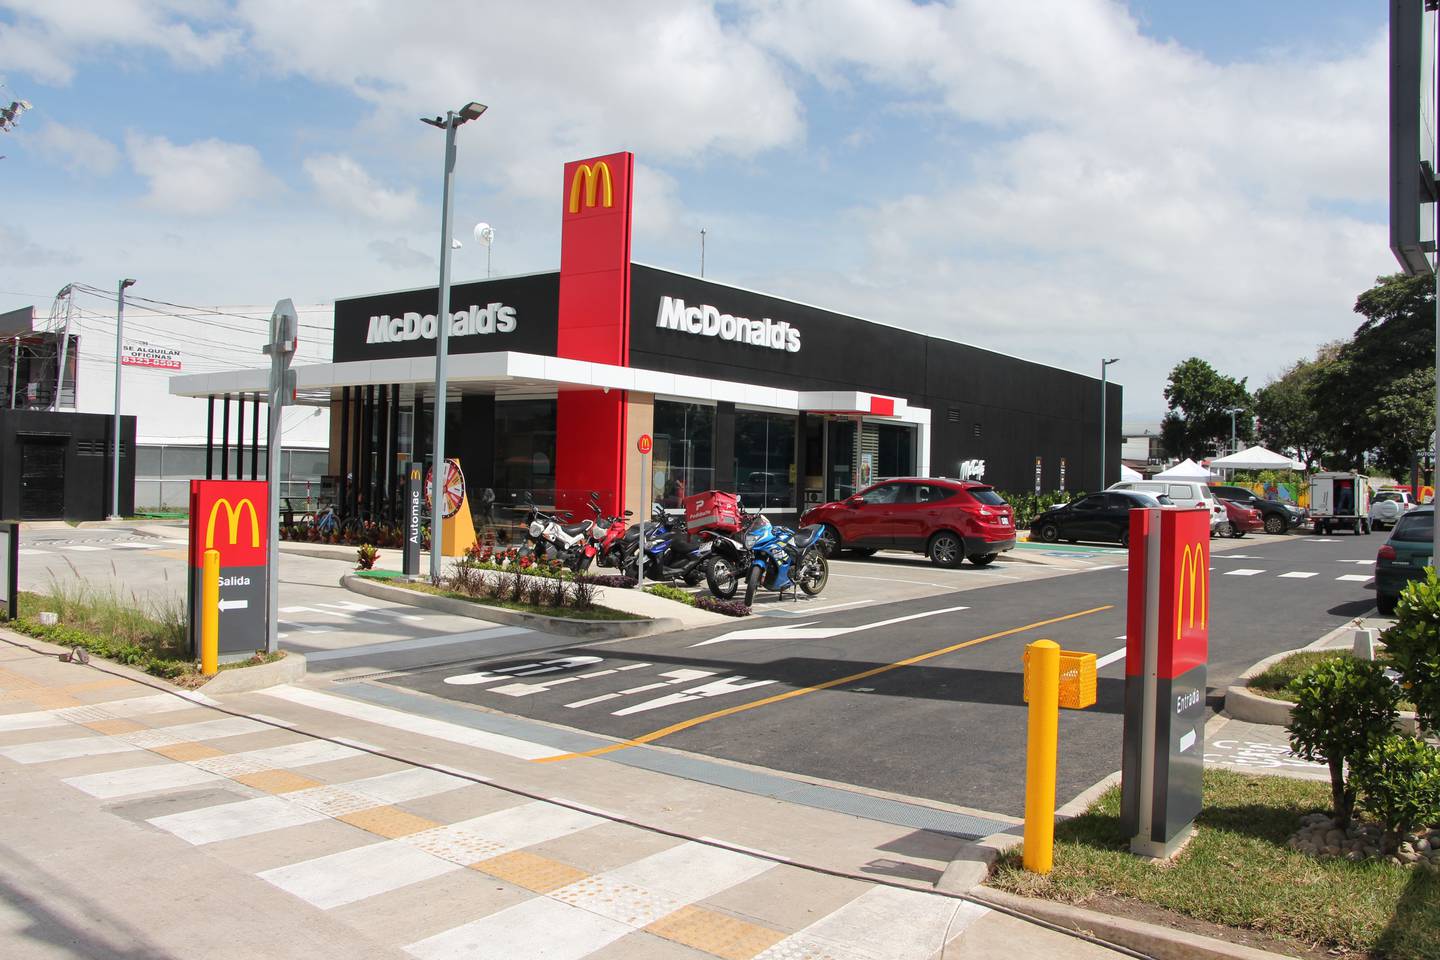 McDonald’s confirma la apertura de un nuevo restaurante sustentable en la localidad de San Antonio de Desamparados. Es el restaurante 69 que la empresa de comidas rápidas abre en el país desde 1972